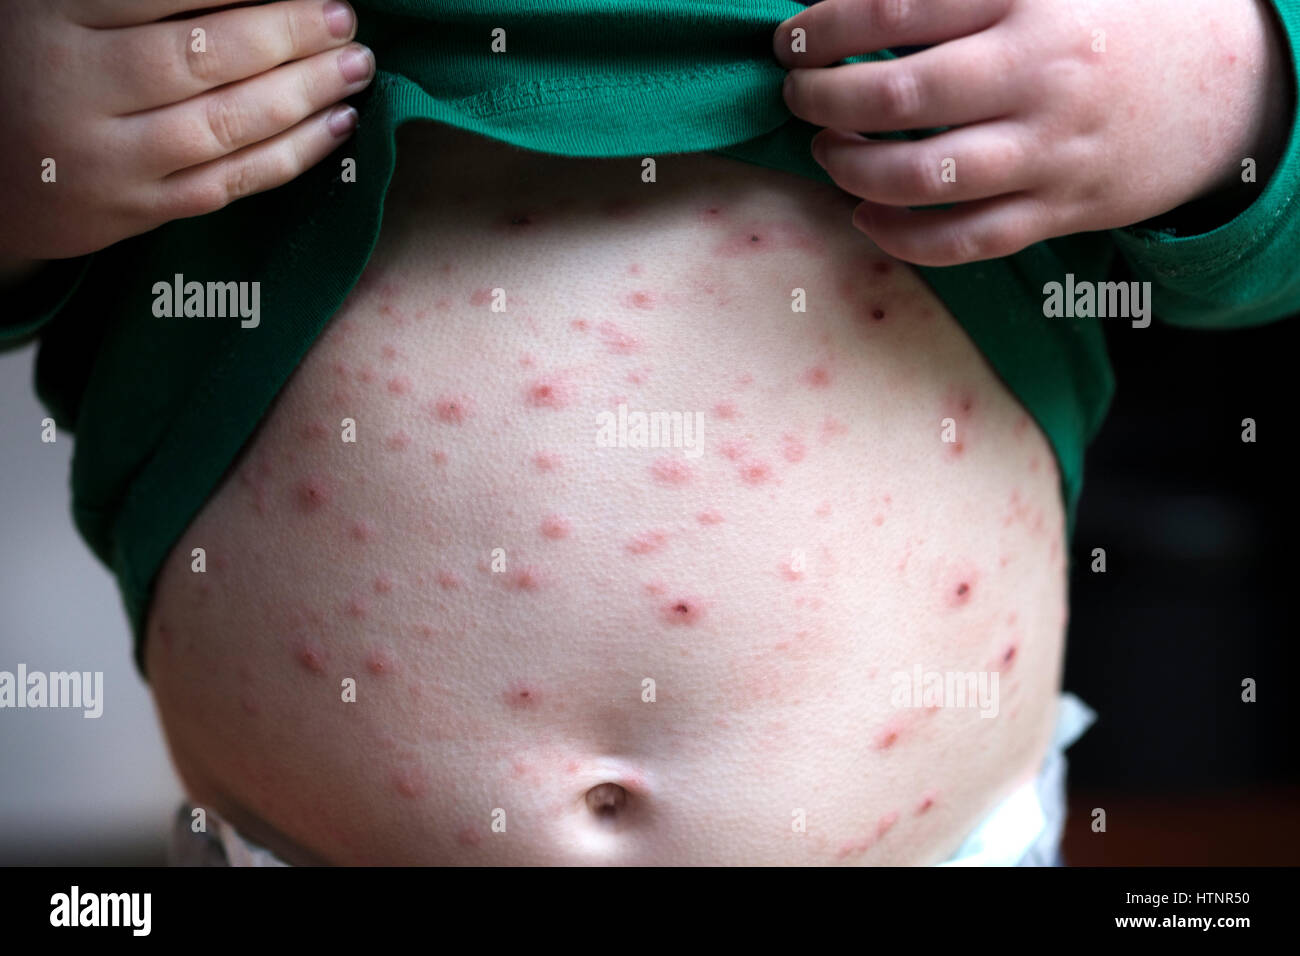 Un petit enfant infectés par le virus de la varicelle varicelle ...